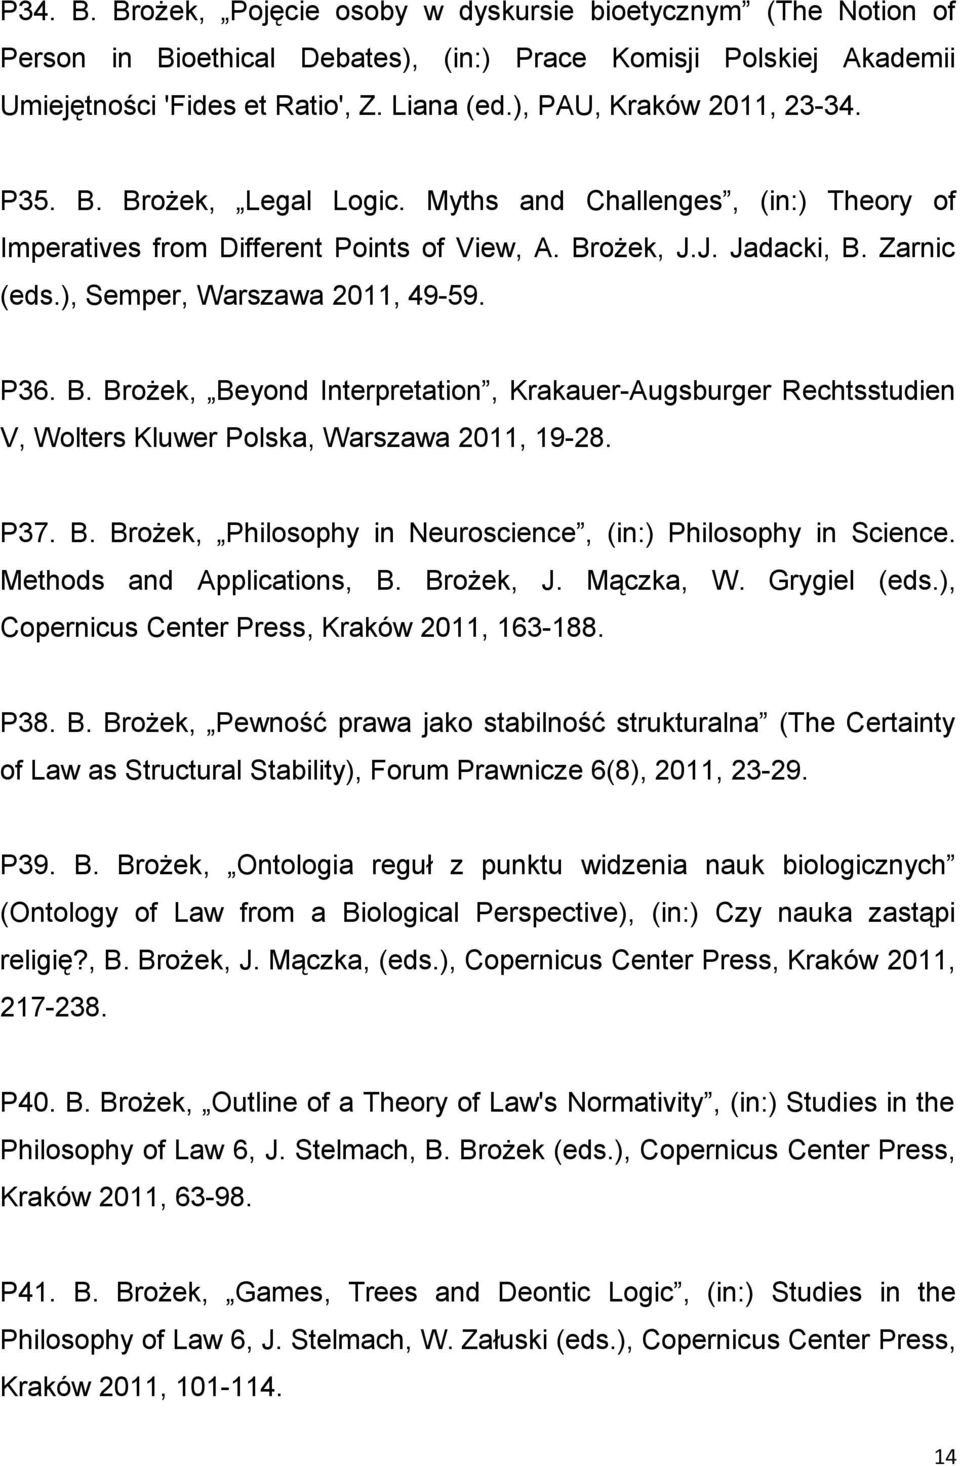 ), Semper, Warszawa 2011, 49-59. P36. B. Brożek, Beyond Interpretation, Krakauer-Augsburger Rechtsstudien V, Wolters Kluwer Polska, Warszawa 2011, 19-28. P37. B. Brożek, Philosophy in Neuroscience, (in:) Philosophy in Science.